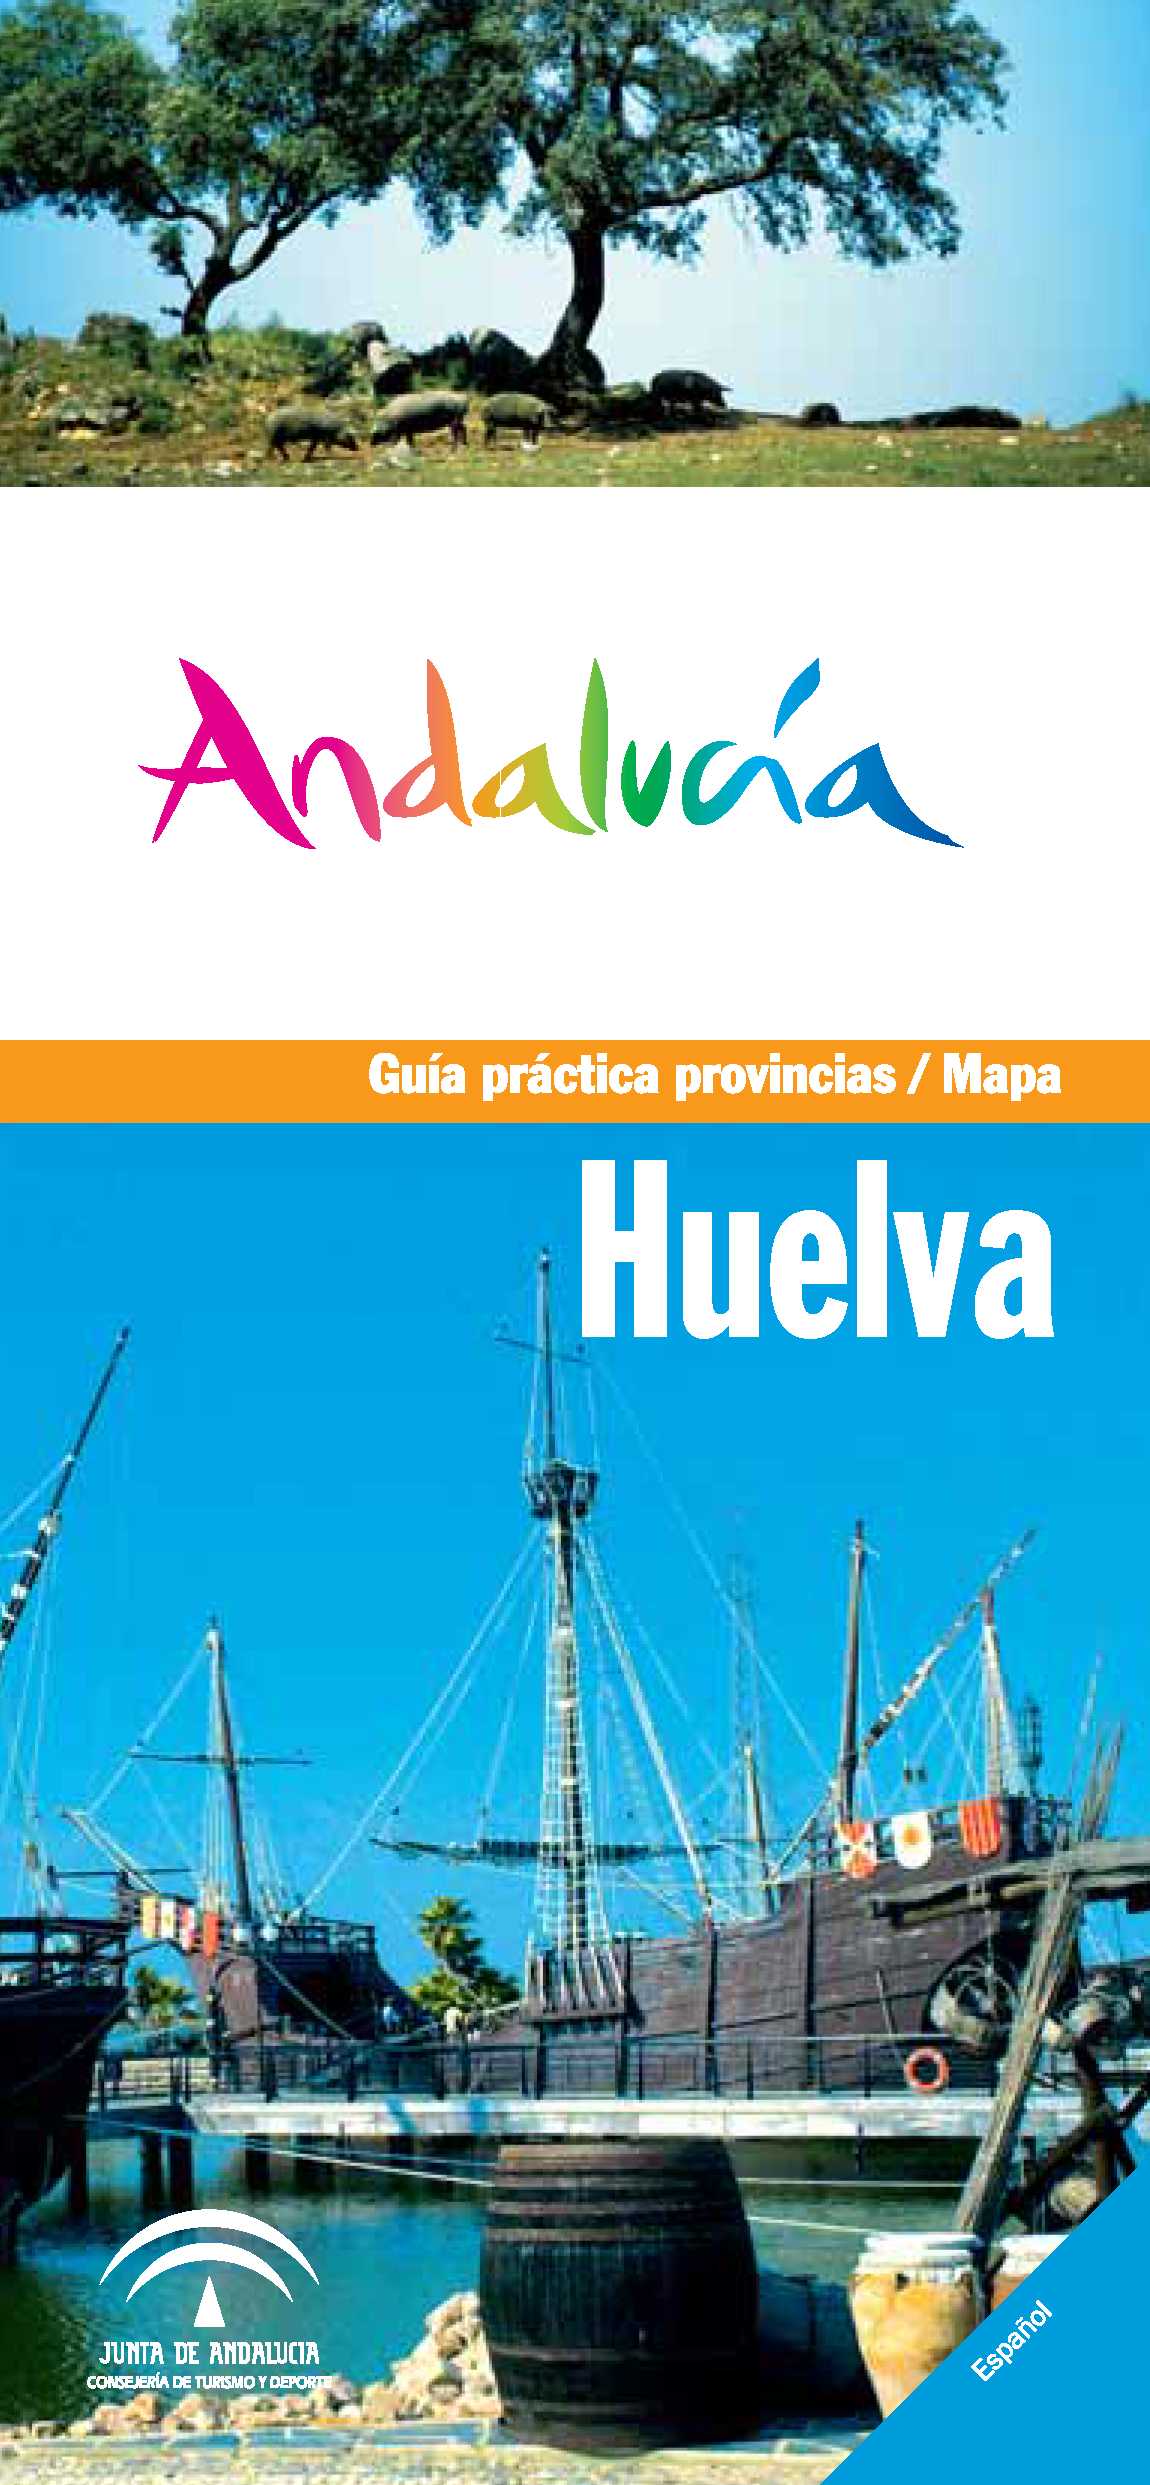 guia_practica_provincia_huelva.png 